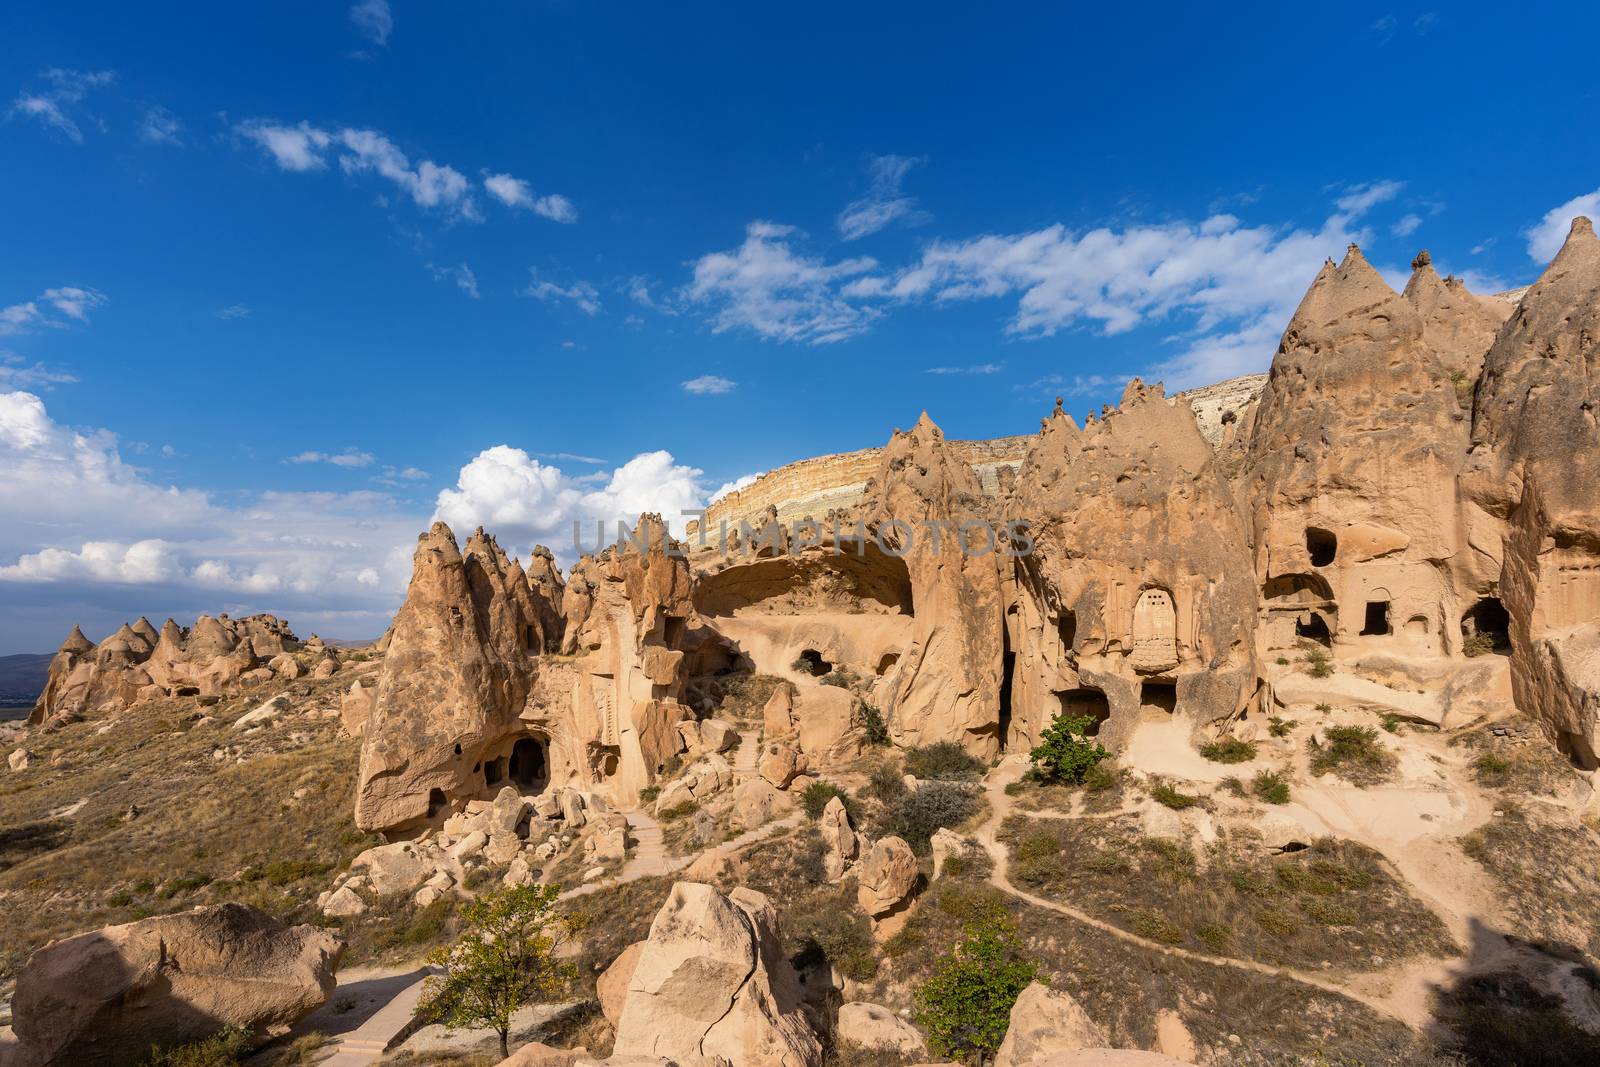 Cave town in Zelve Valley, Cappadocia in Turkey.